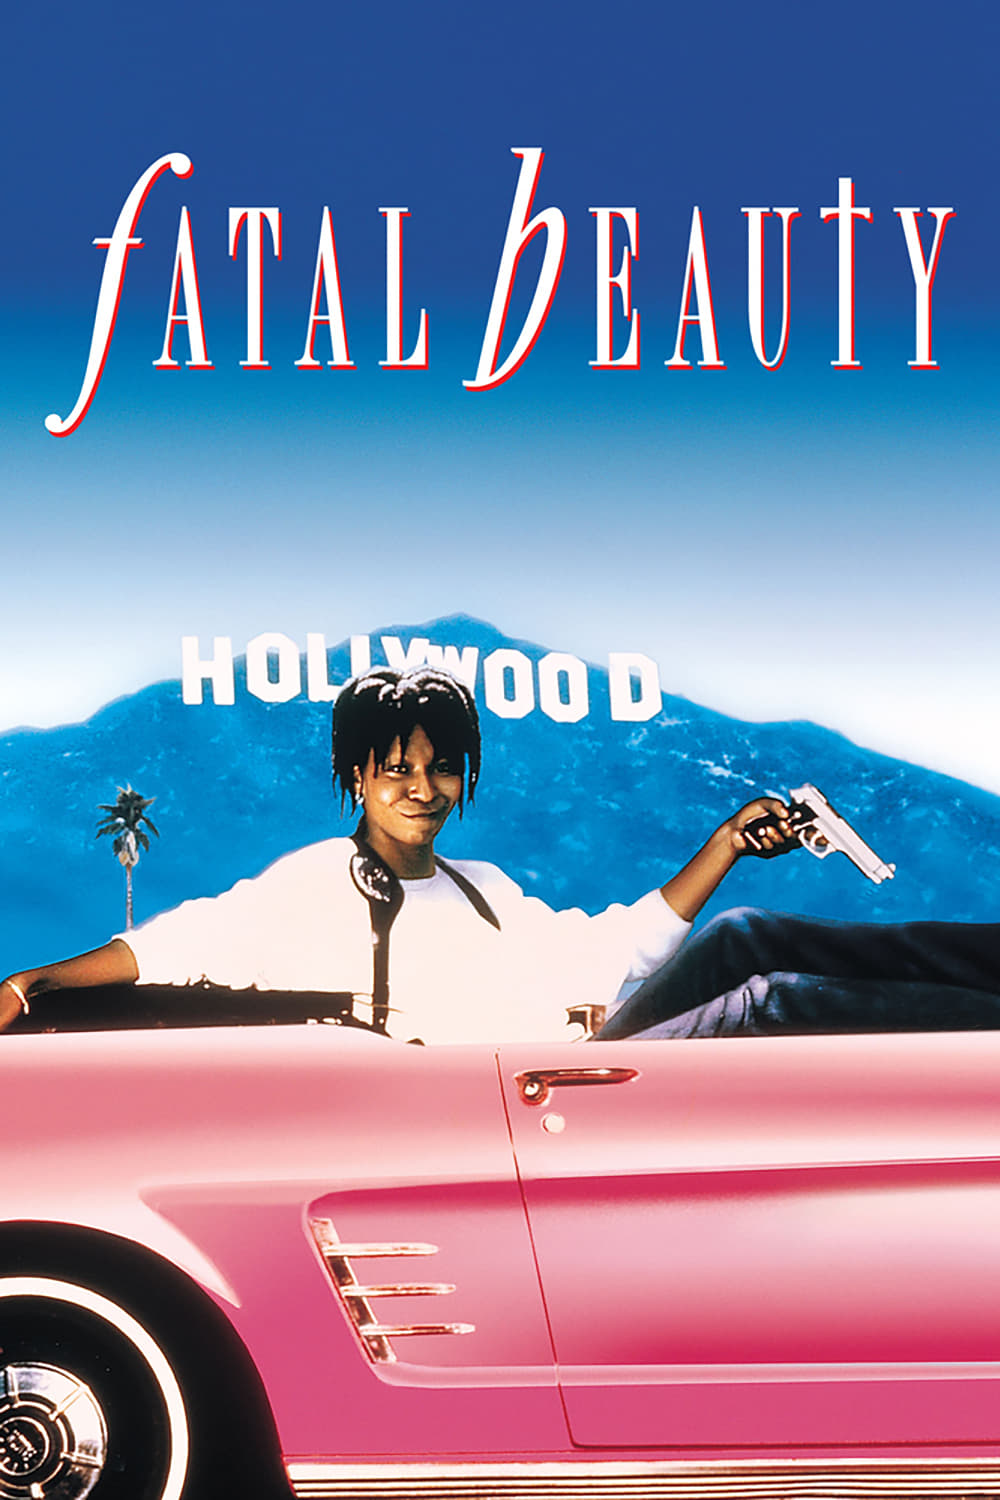 Fatal Beauty (1987)